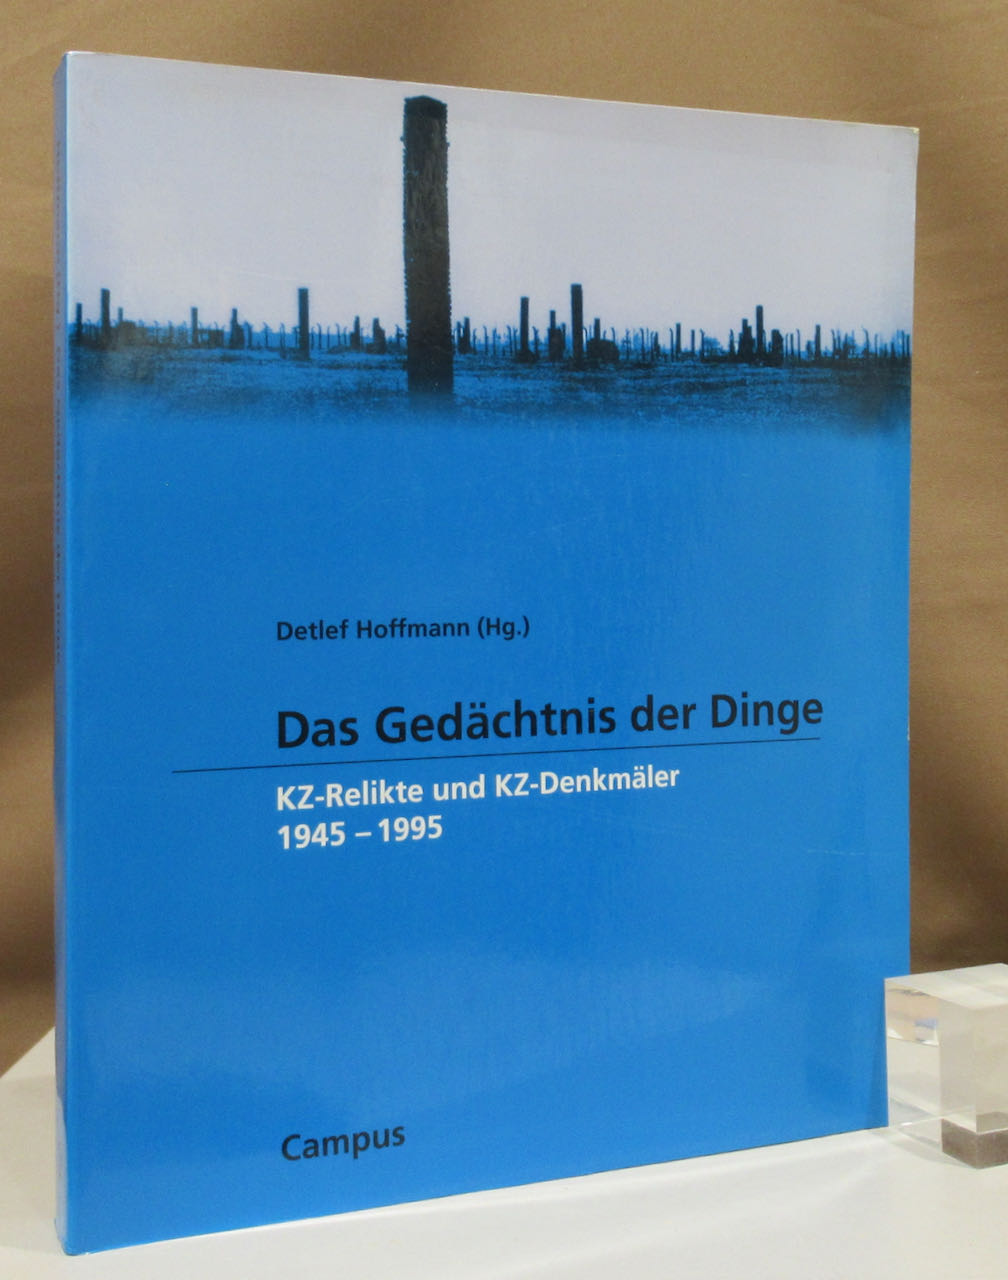 Das Gedächtnis der Dinge. KZ-Relikte und KZ-Denkmäler 1945 - 1995. - Hoffmann, Detlef (Hg.).